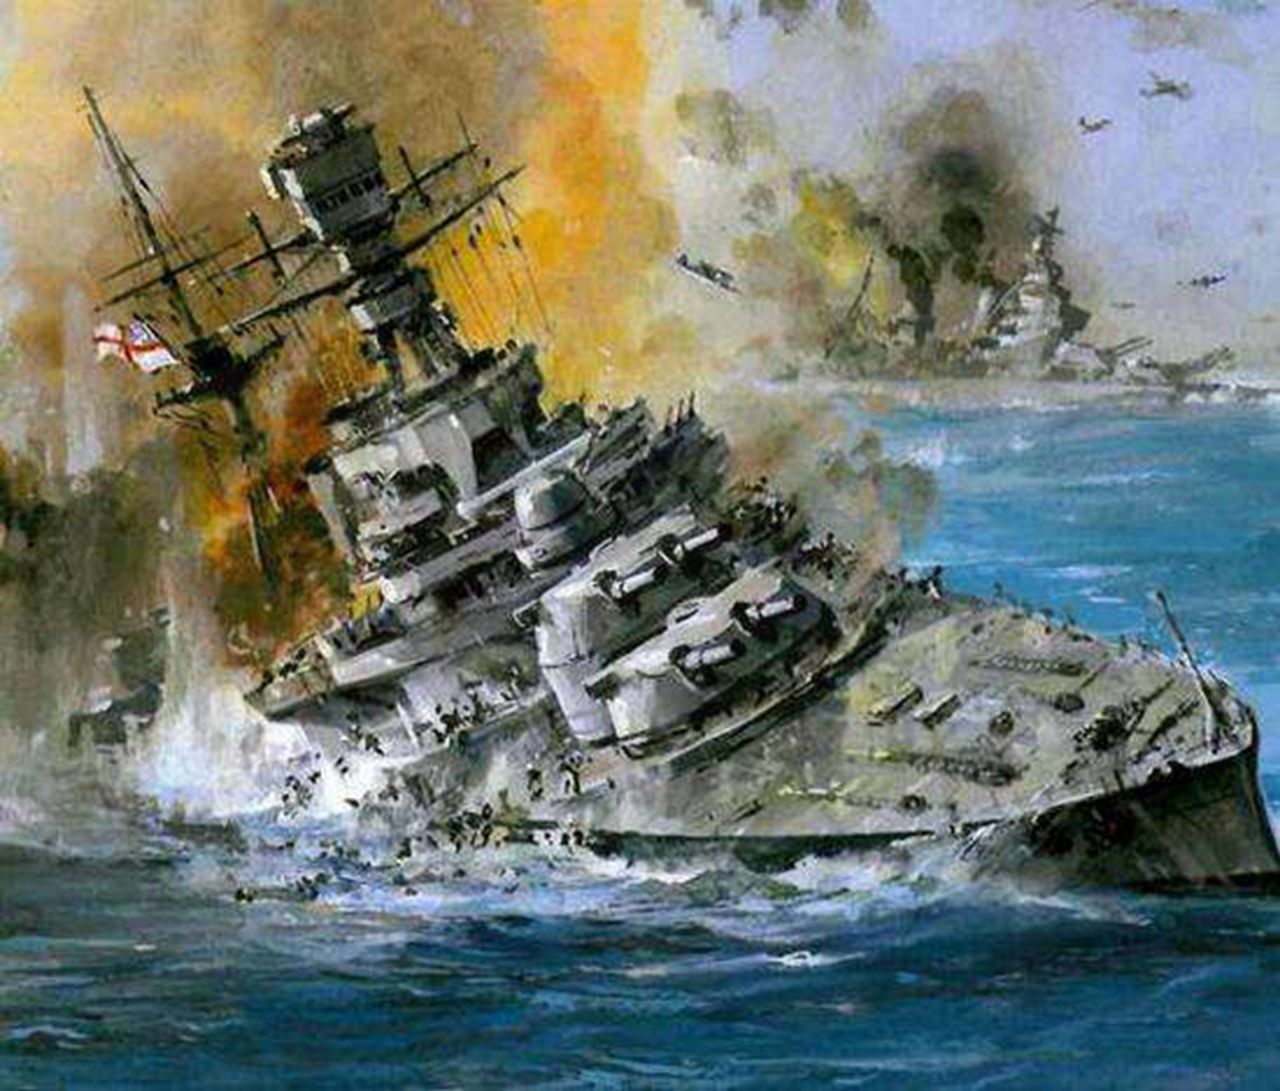 12月10日马来海战英国巨舰被战机击沉1941年:大炮巨舰时代结束了